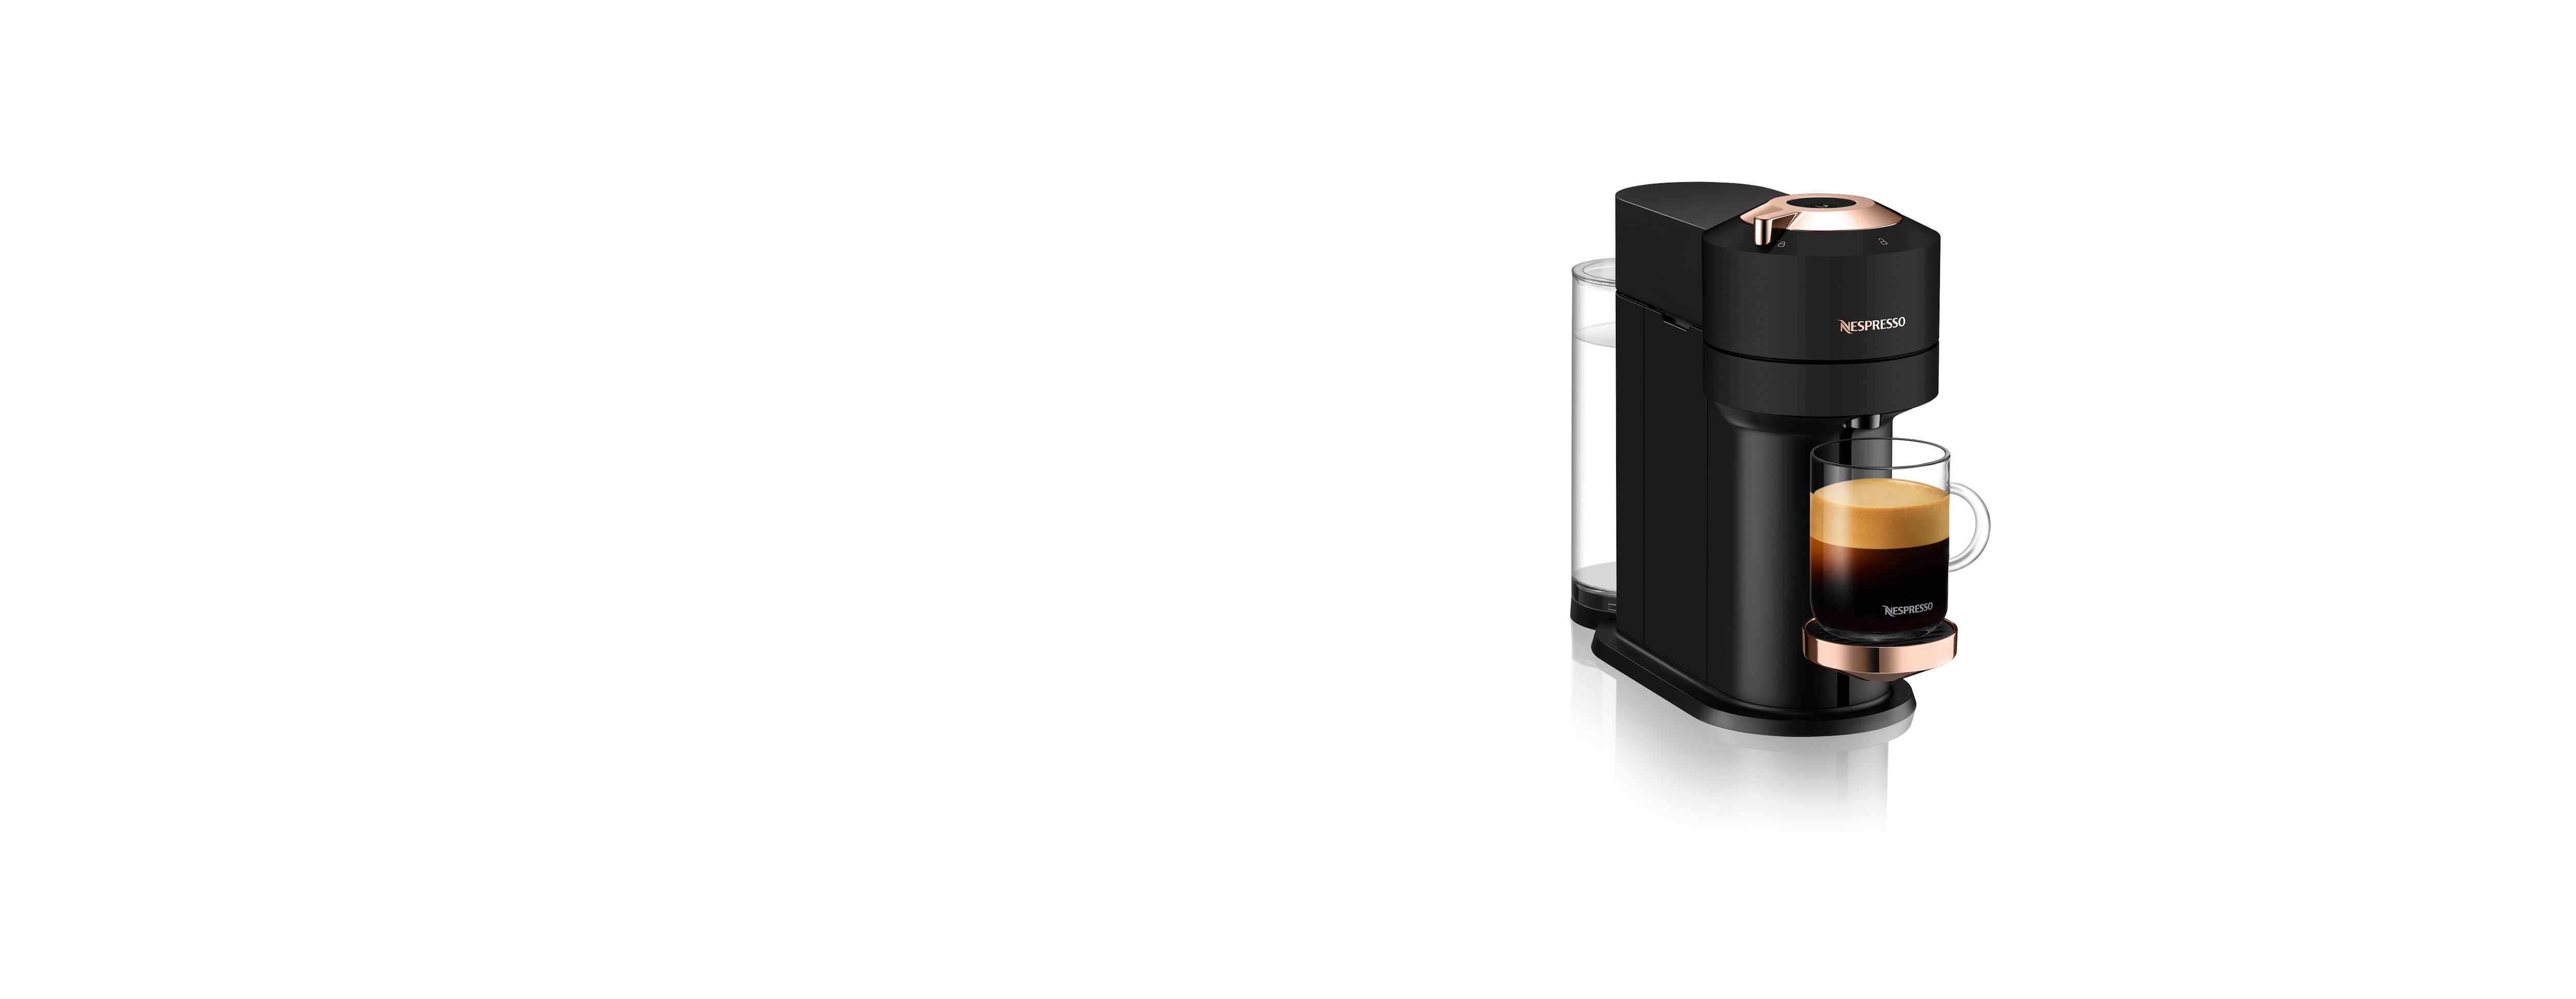 Nespresso Vertuo Next Premium Espresso Machine by DeLonghi - Black Ros